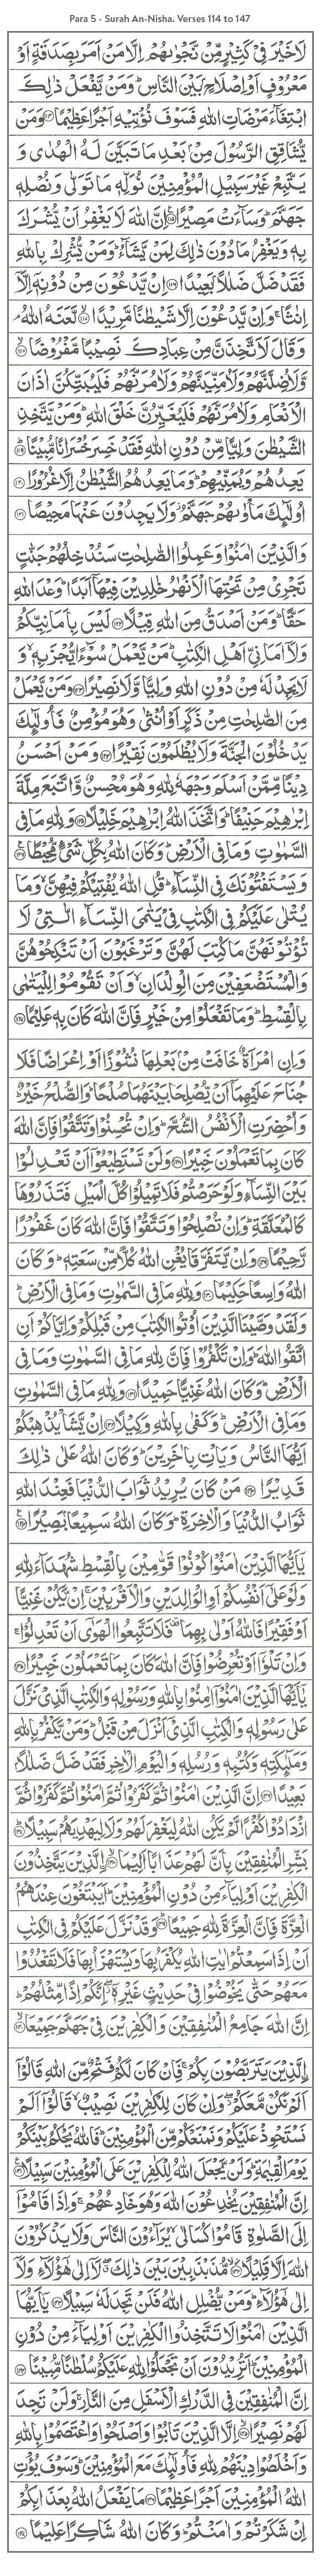 Para 5 - Surah An-Nisha- Verses 114 to 147